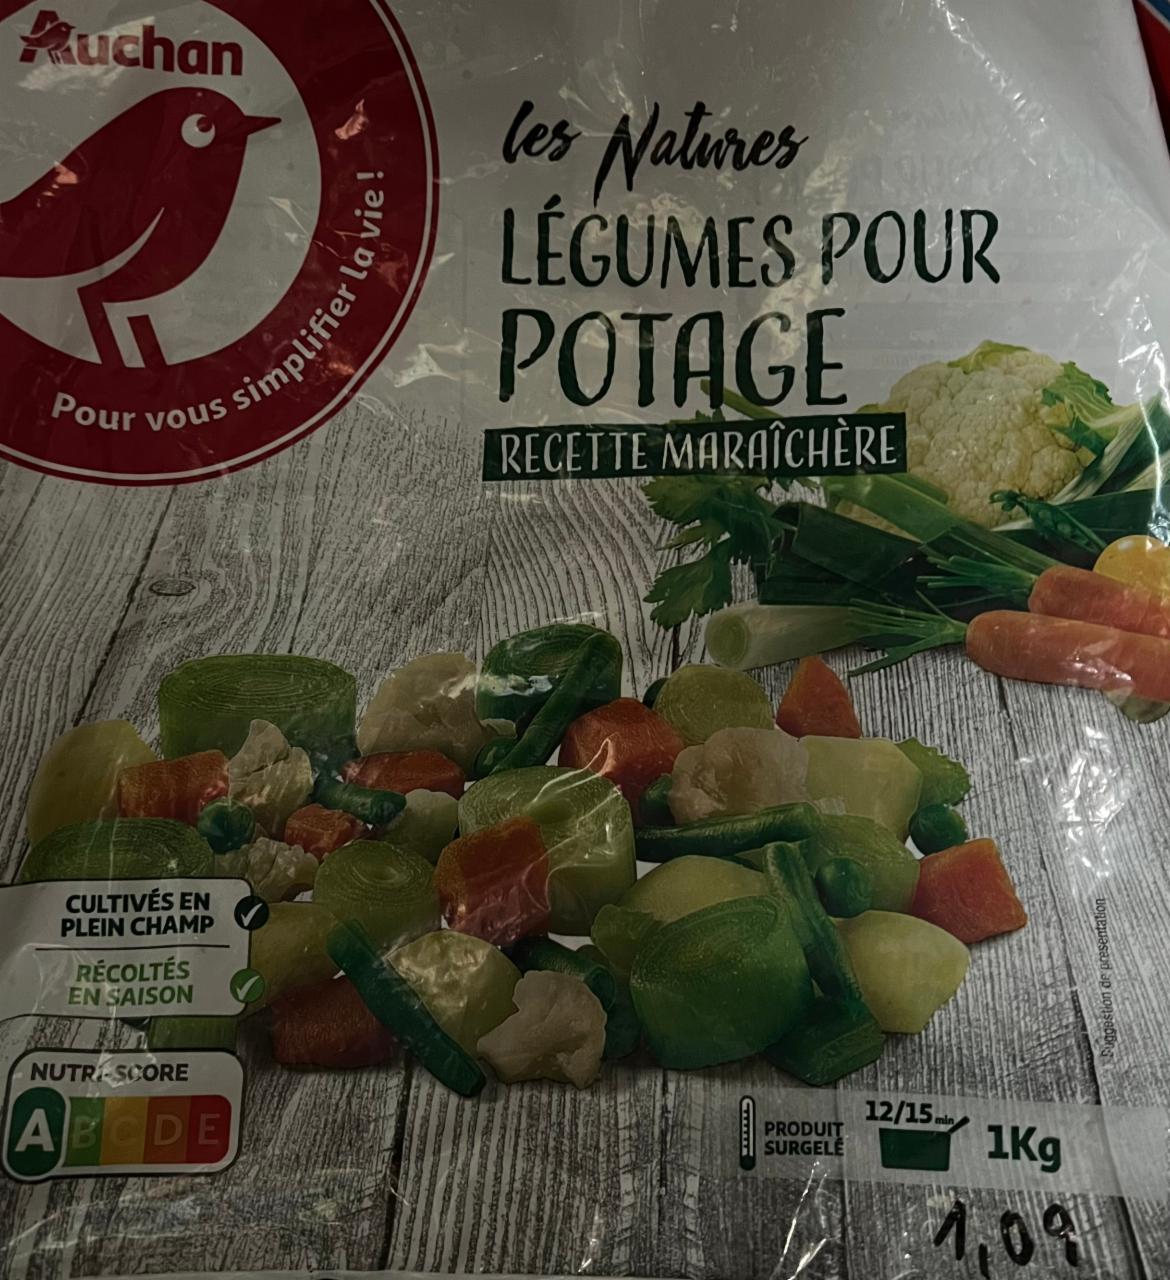 Fotografie - Les natures légumes pour potage Auchan